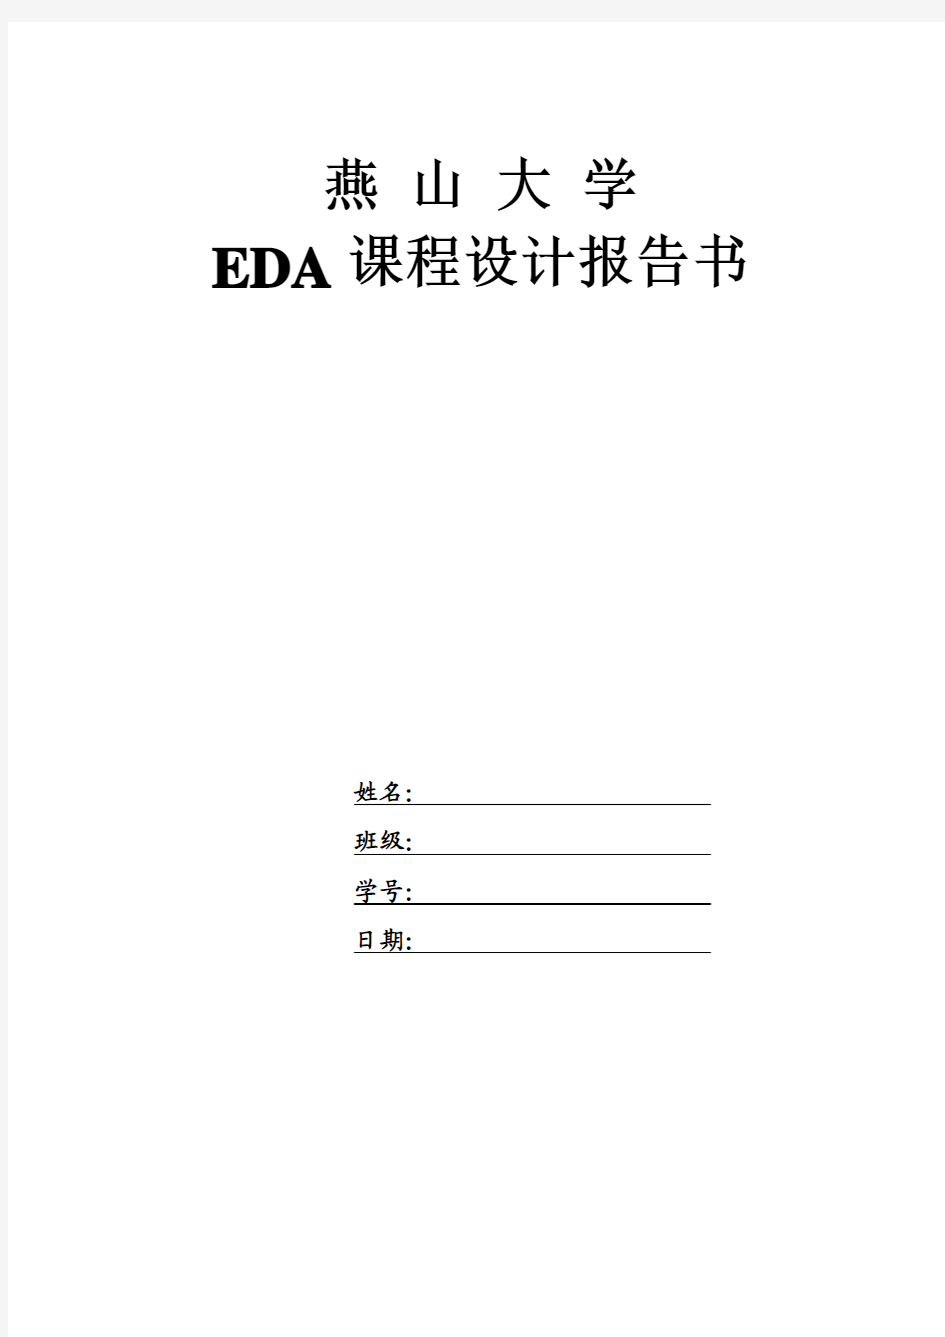 燕山大学EDA课程设计电子日历